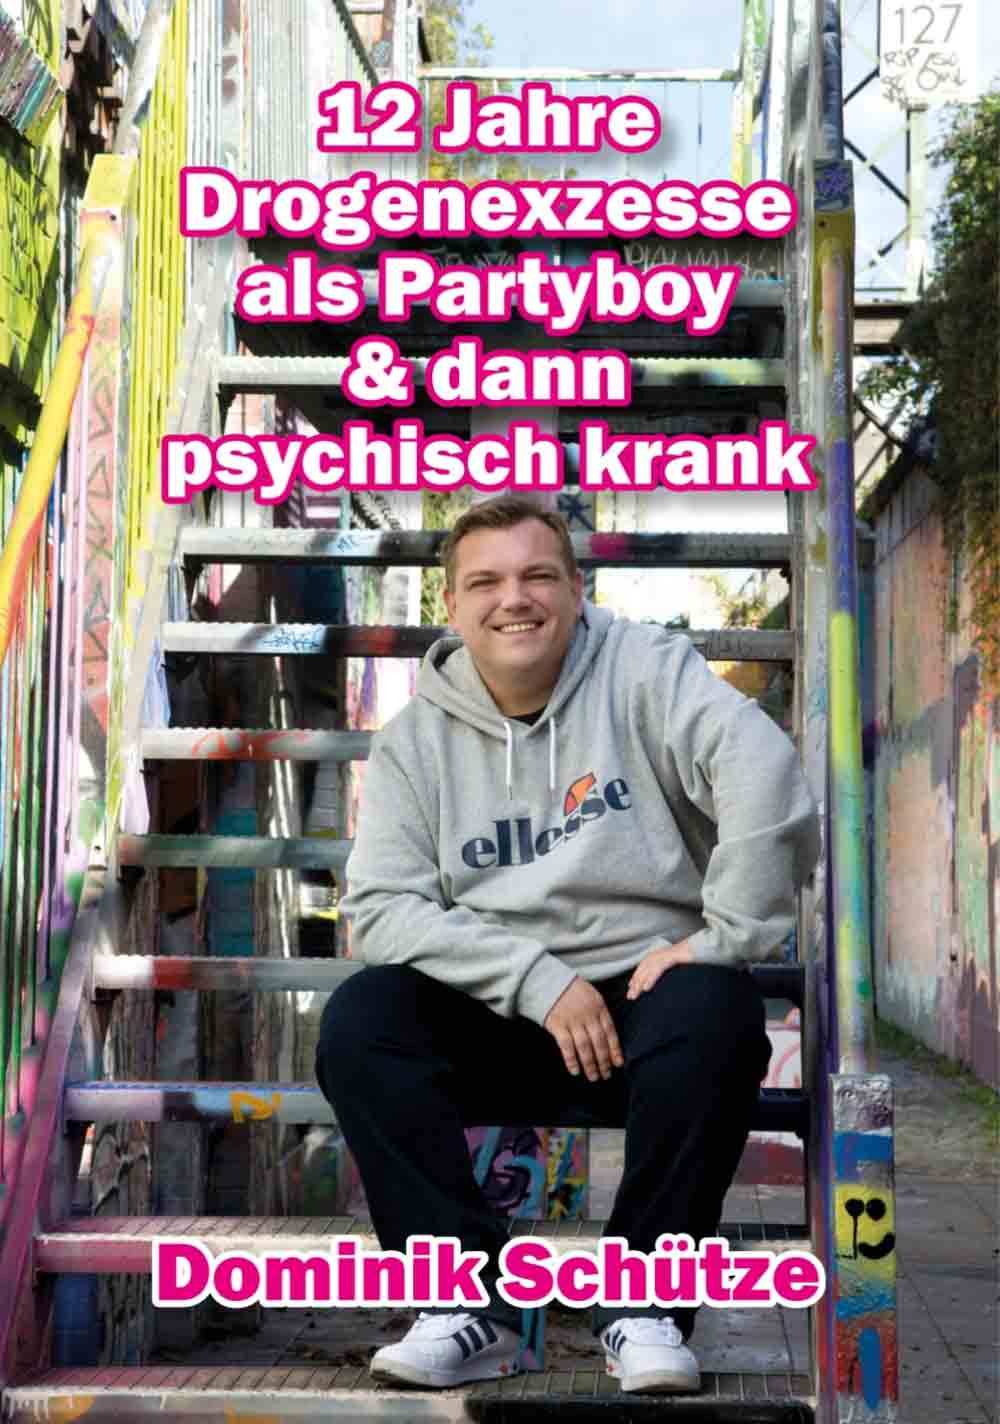 Lesetipps für Gütersloh, Dominik Schütze, 12 Jahre Drogenexzesse als Partyboy und dann psychisch krank